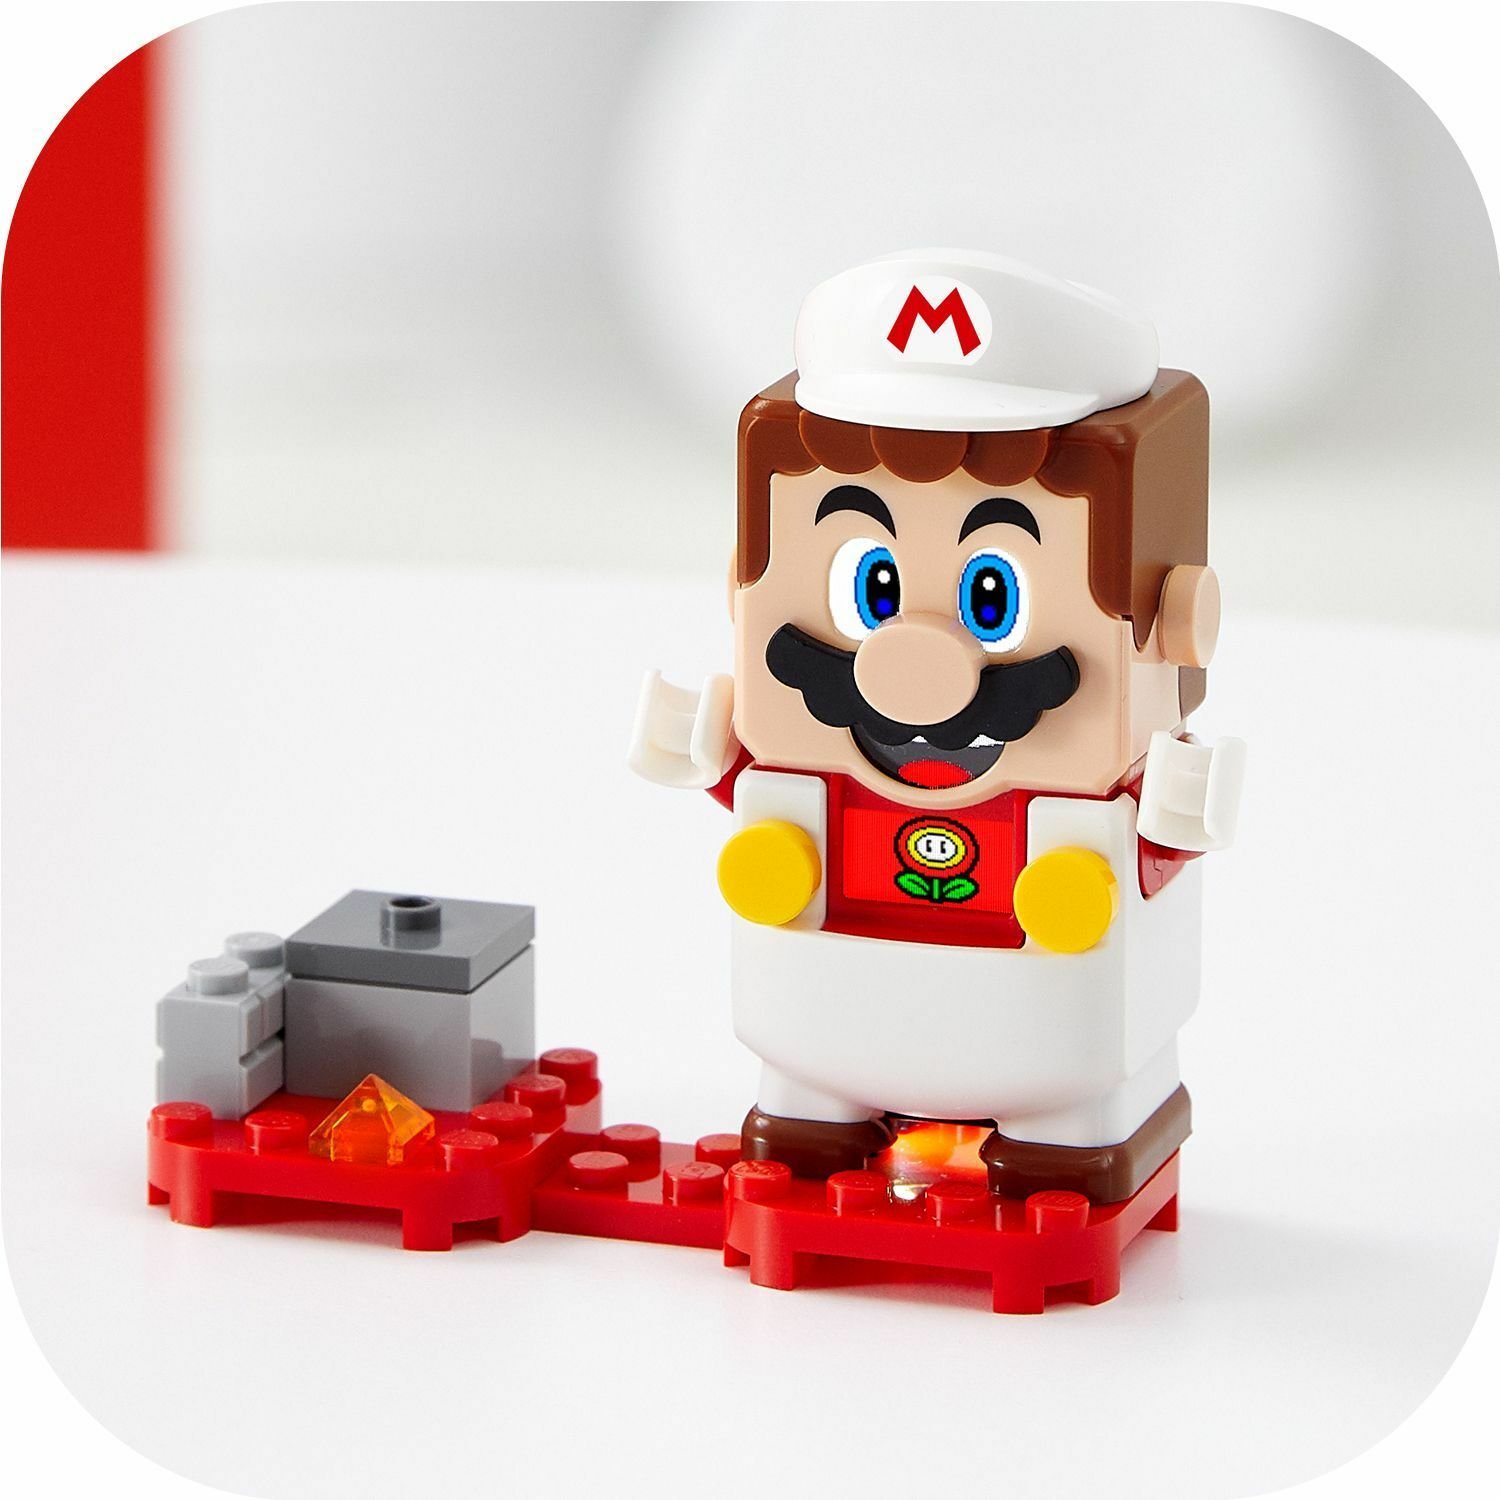 Lego Super Mario 71370 Марио-пожарный. Набор усилений